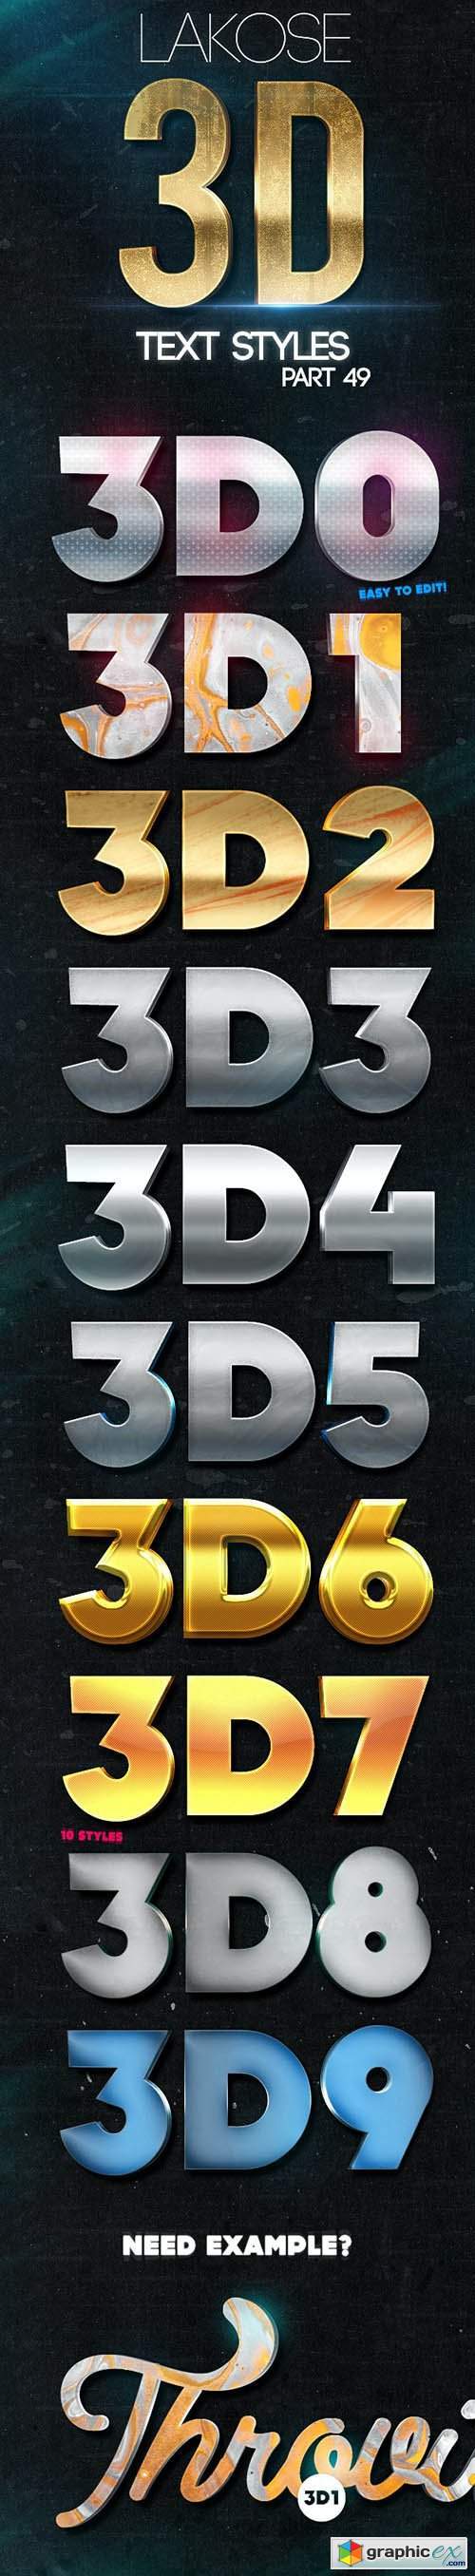 Lakose 3D Text Styles Part 49